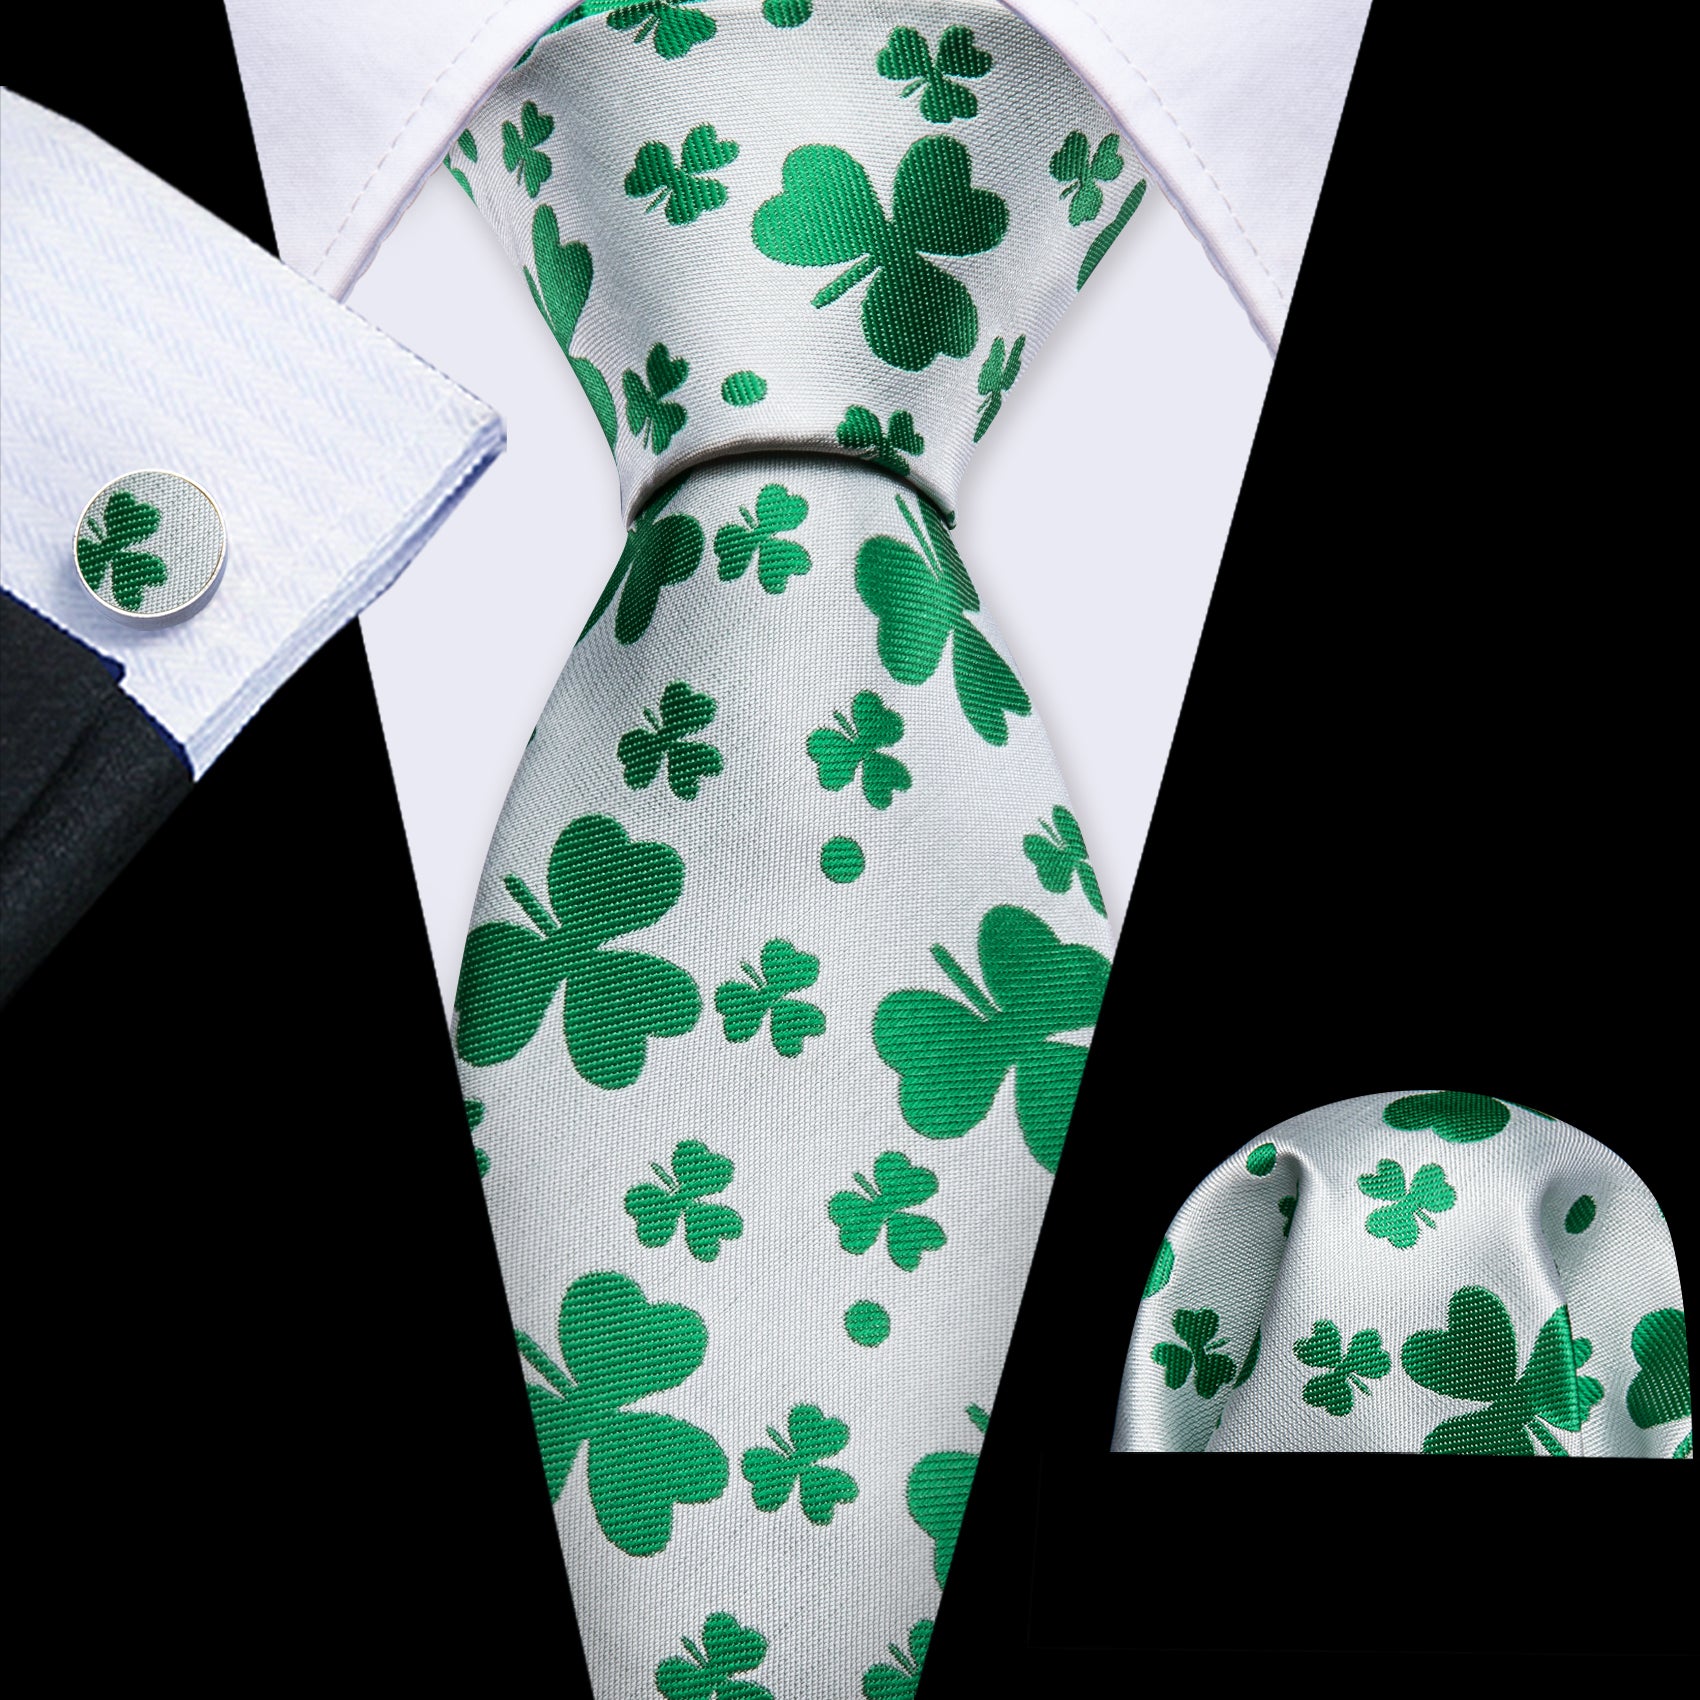 Barry Wang White Green Clover Silk Tie Handkerchief Cufflinks Set